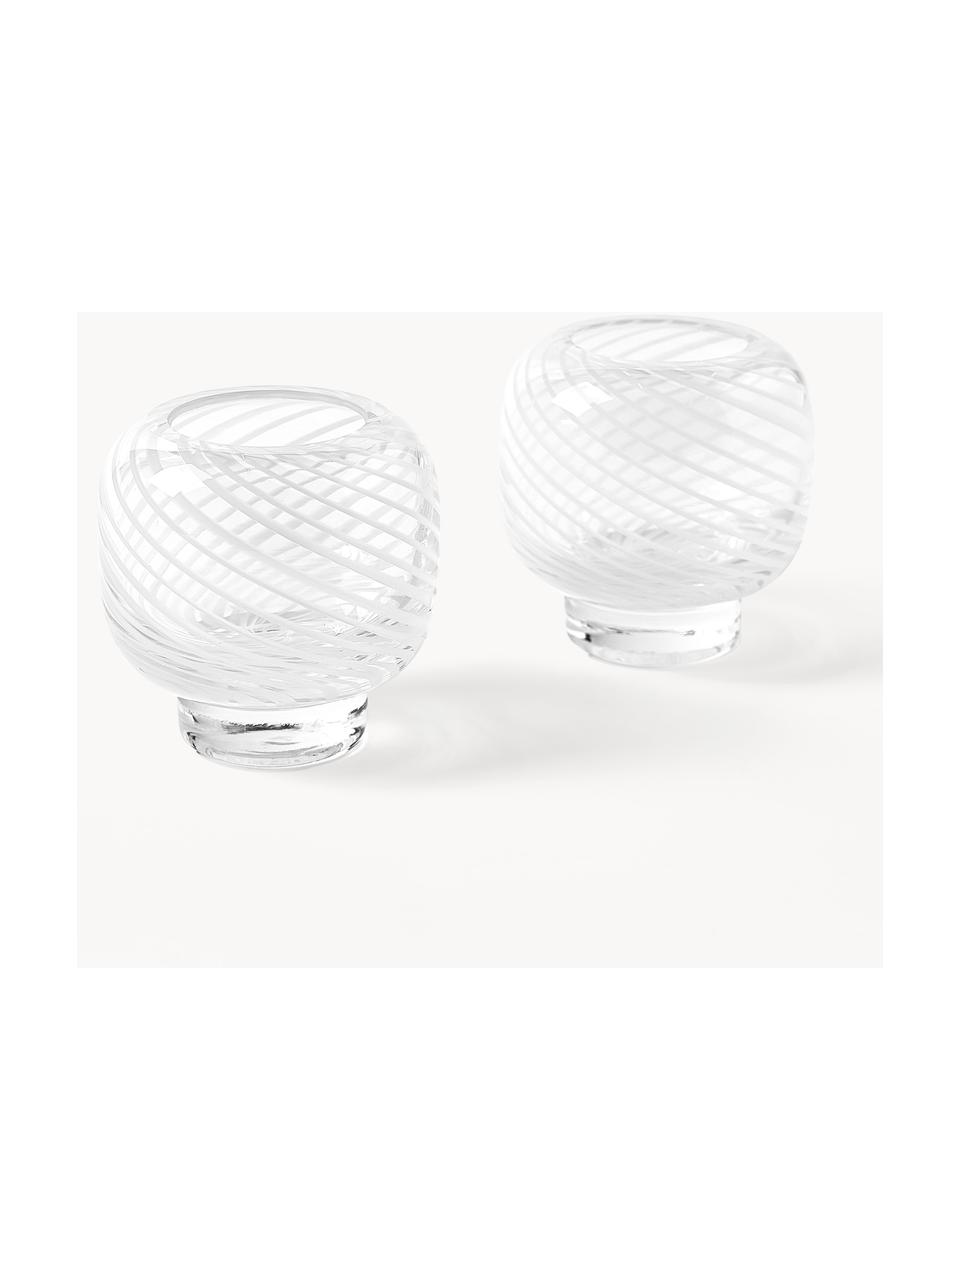 Mundgeblasene Teelichthalter Suze, 2 Stück, Glas, mundgeblasen, Weiß, transparent, Ø 9 x H 9 cm